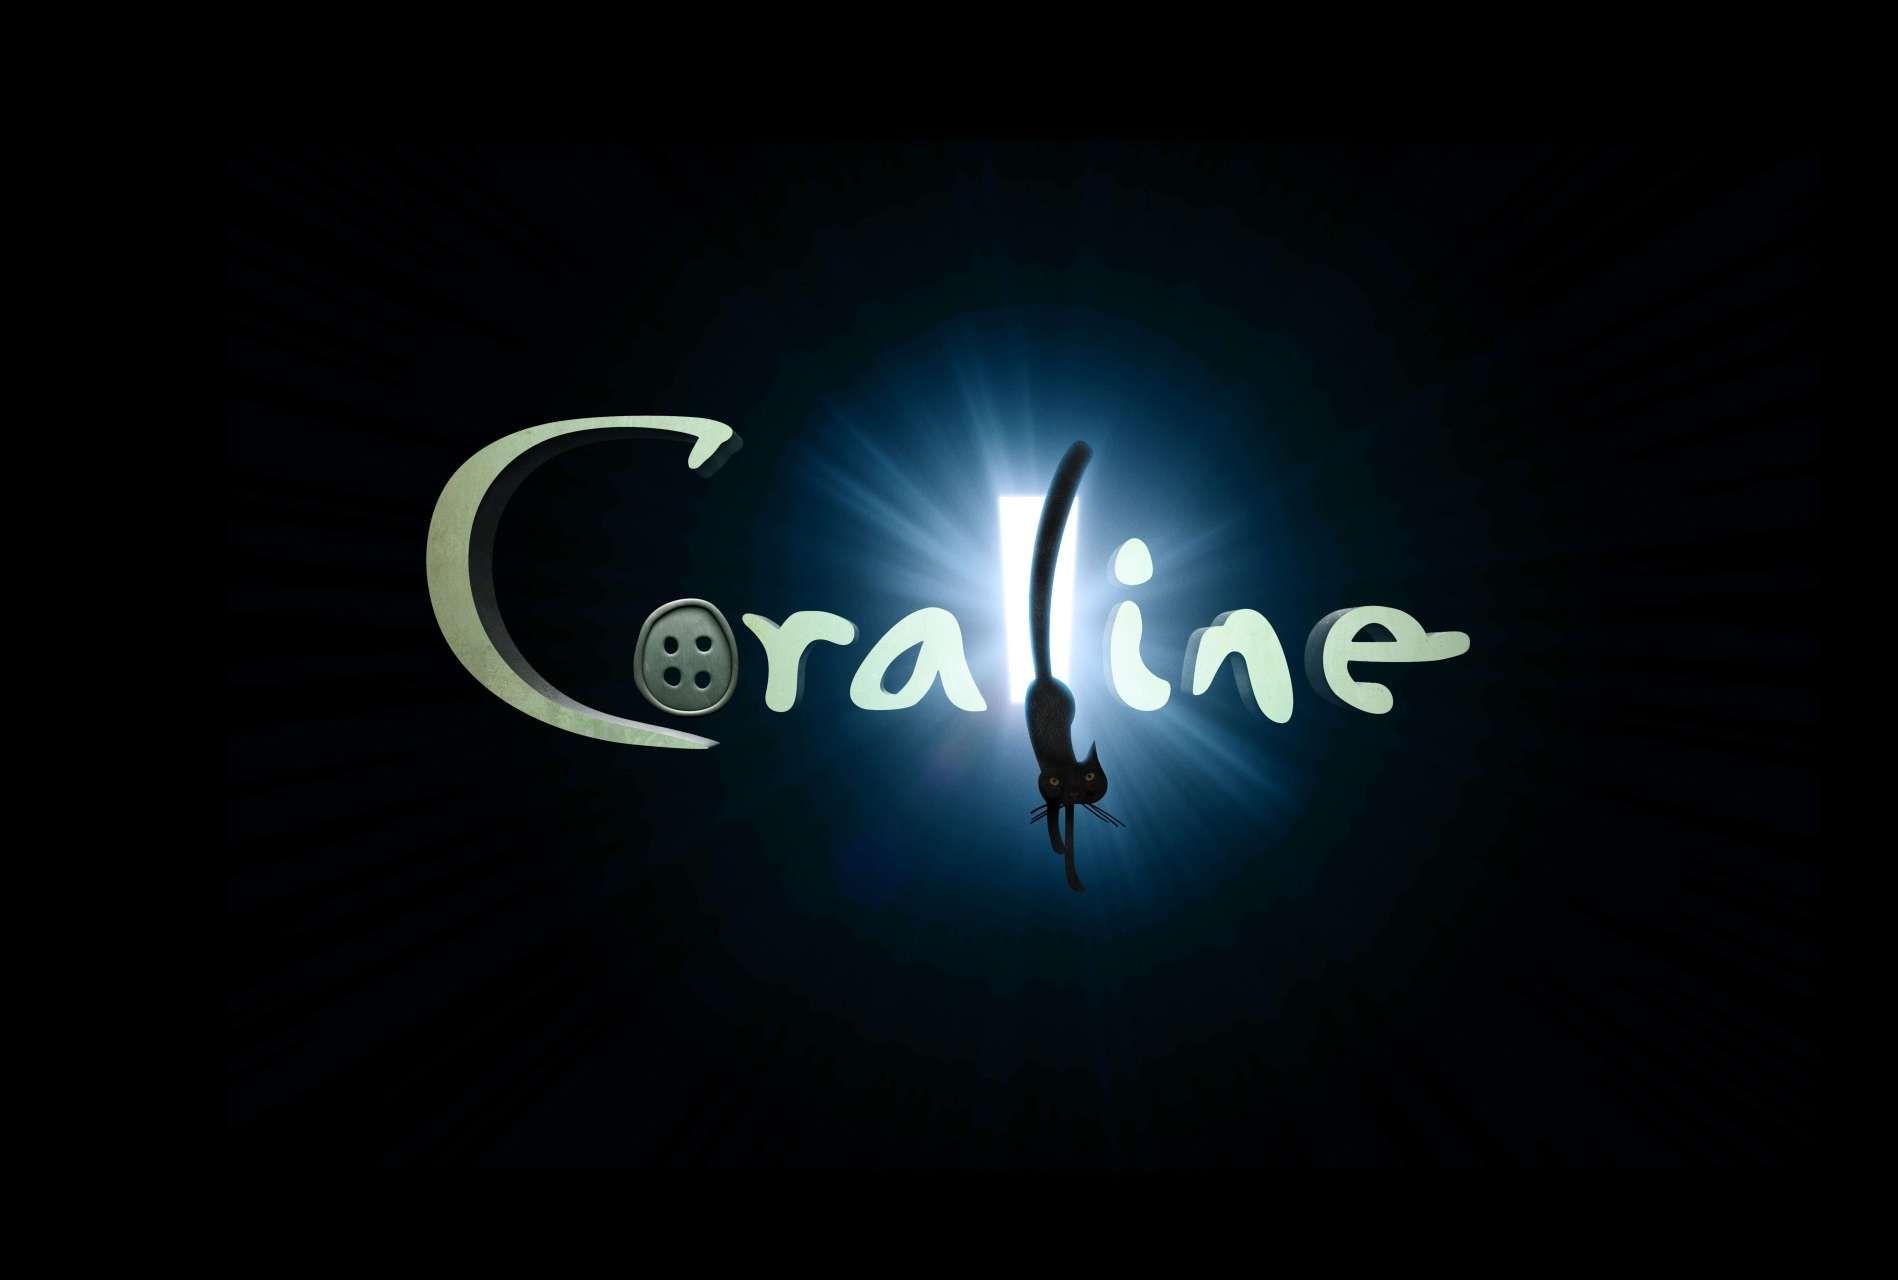 Coraline Logo - Coraline (Movie) | Mystery Kids Wiki | FANDOM powered by Wikia